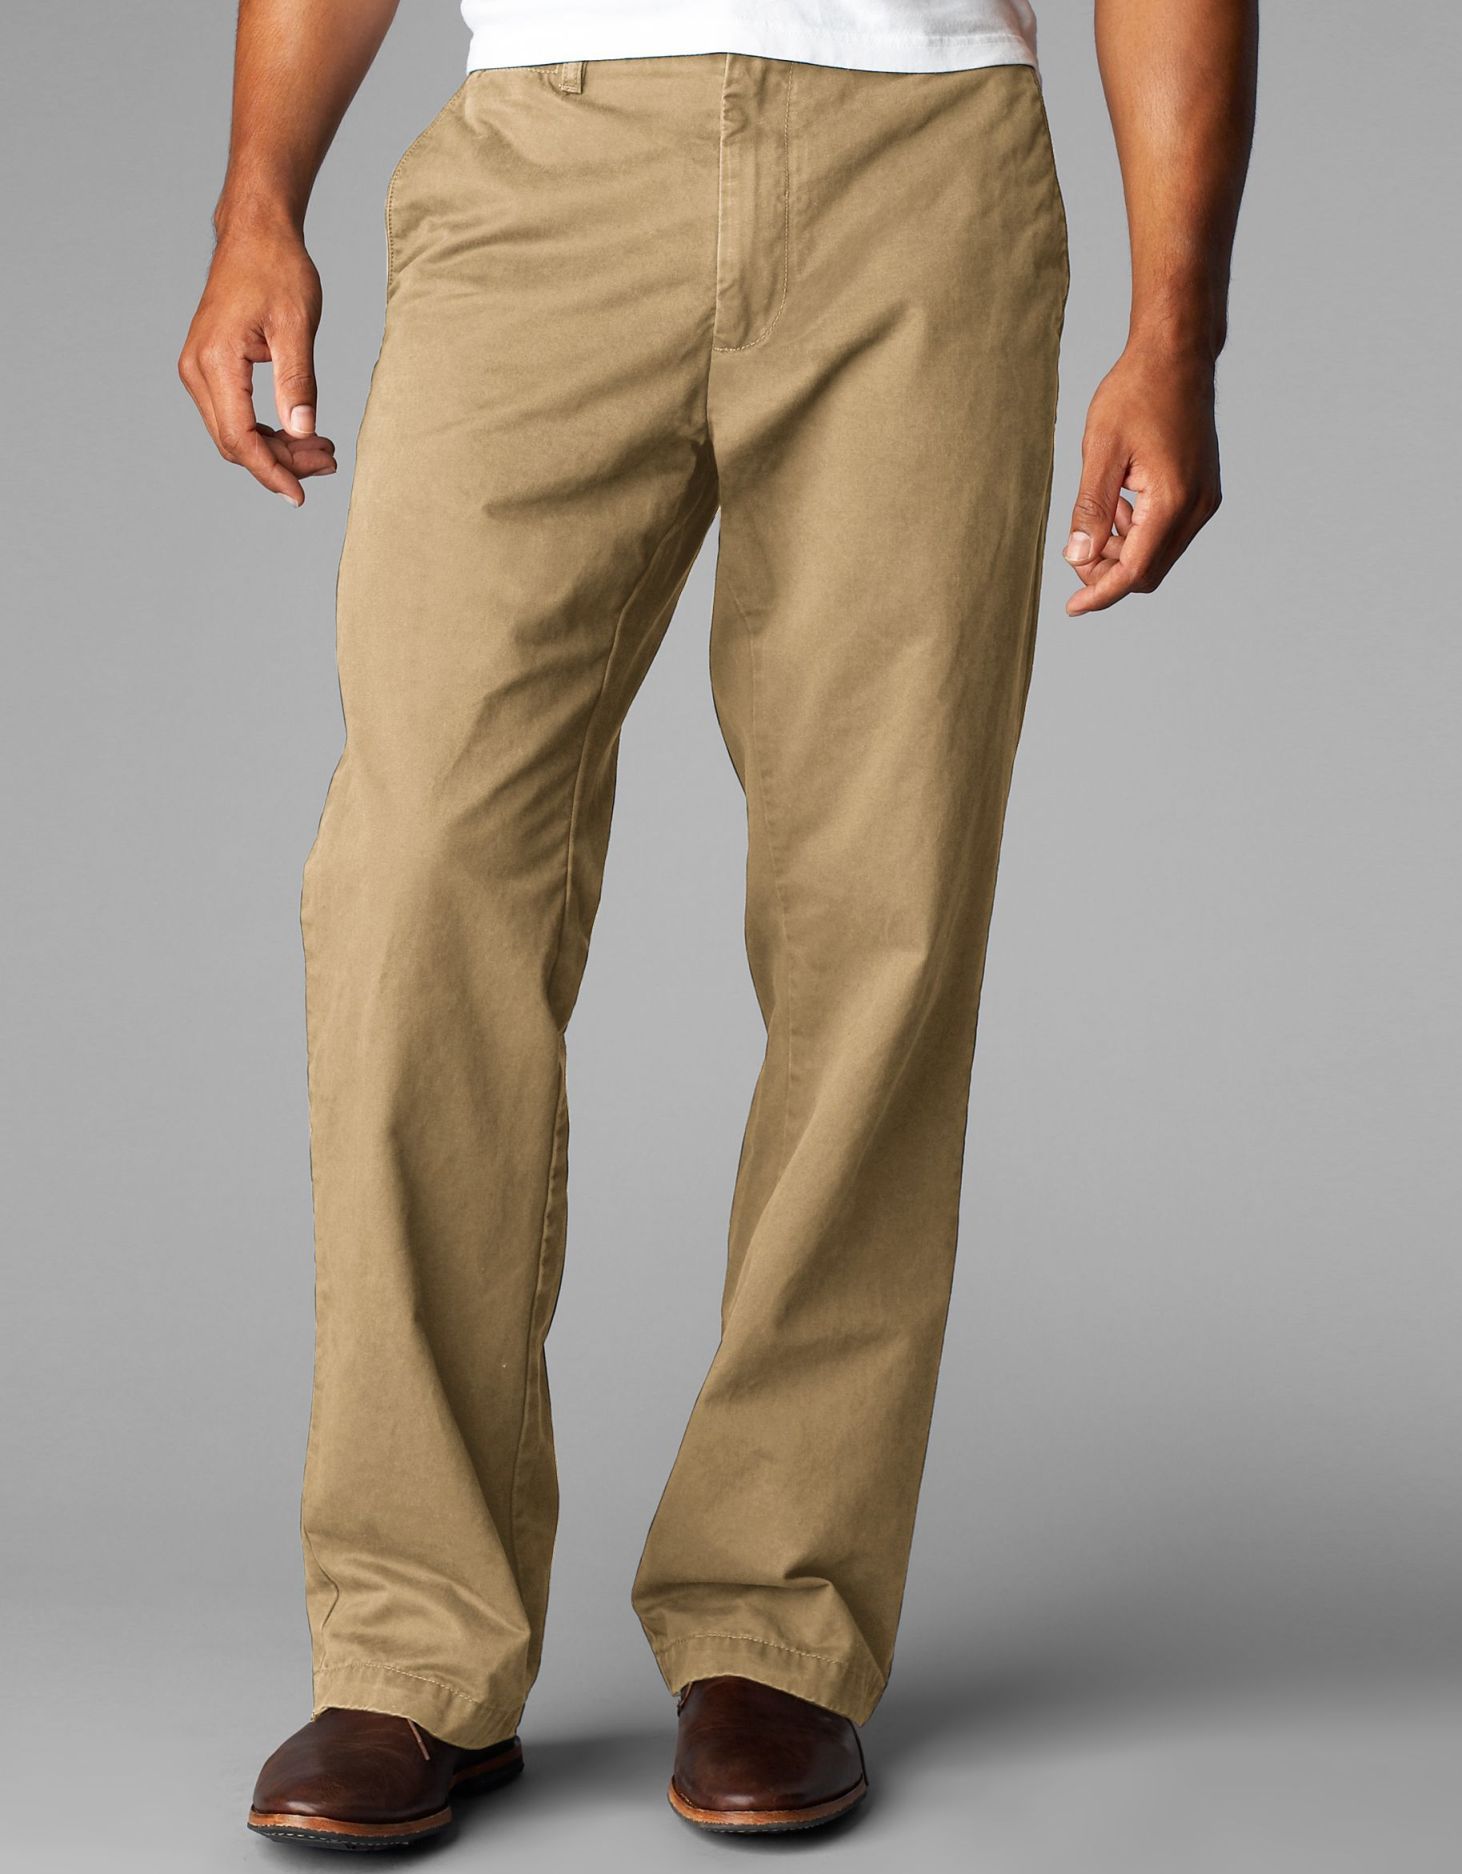 Dockers Men's Soft Khaki - Clothing - Men's Clothing - Men's Pants